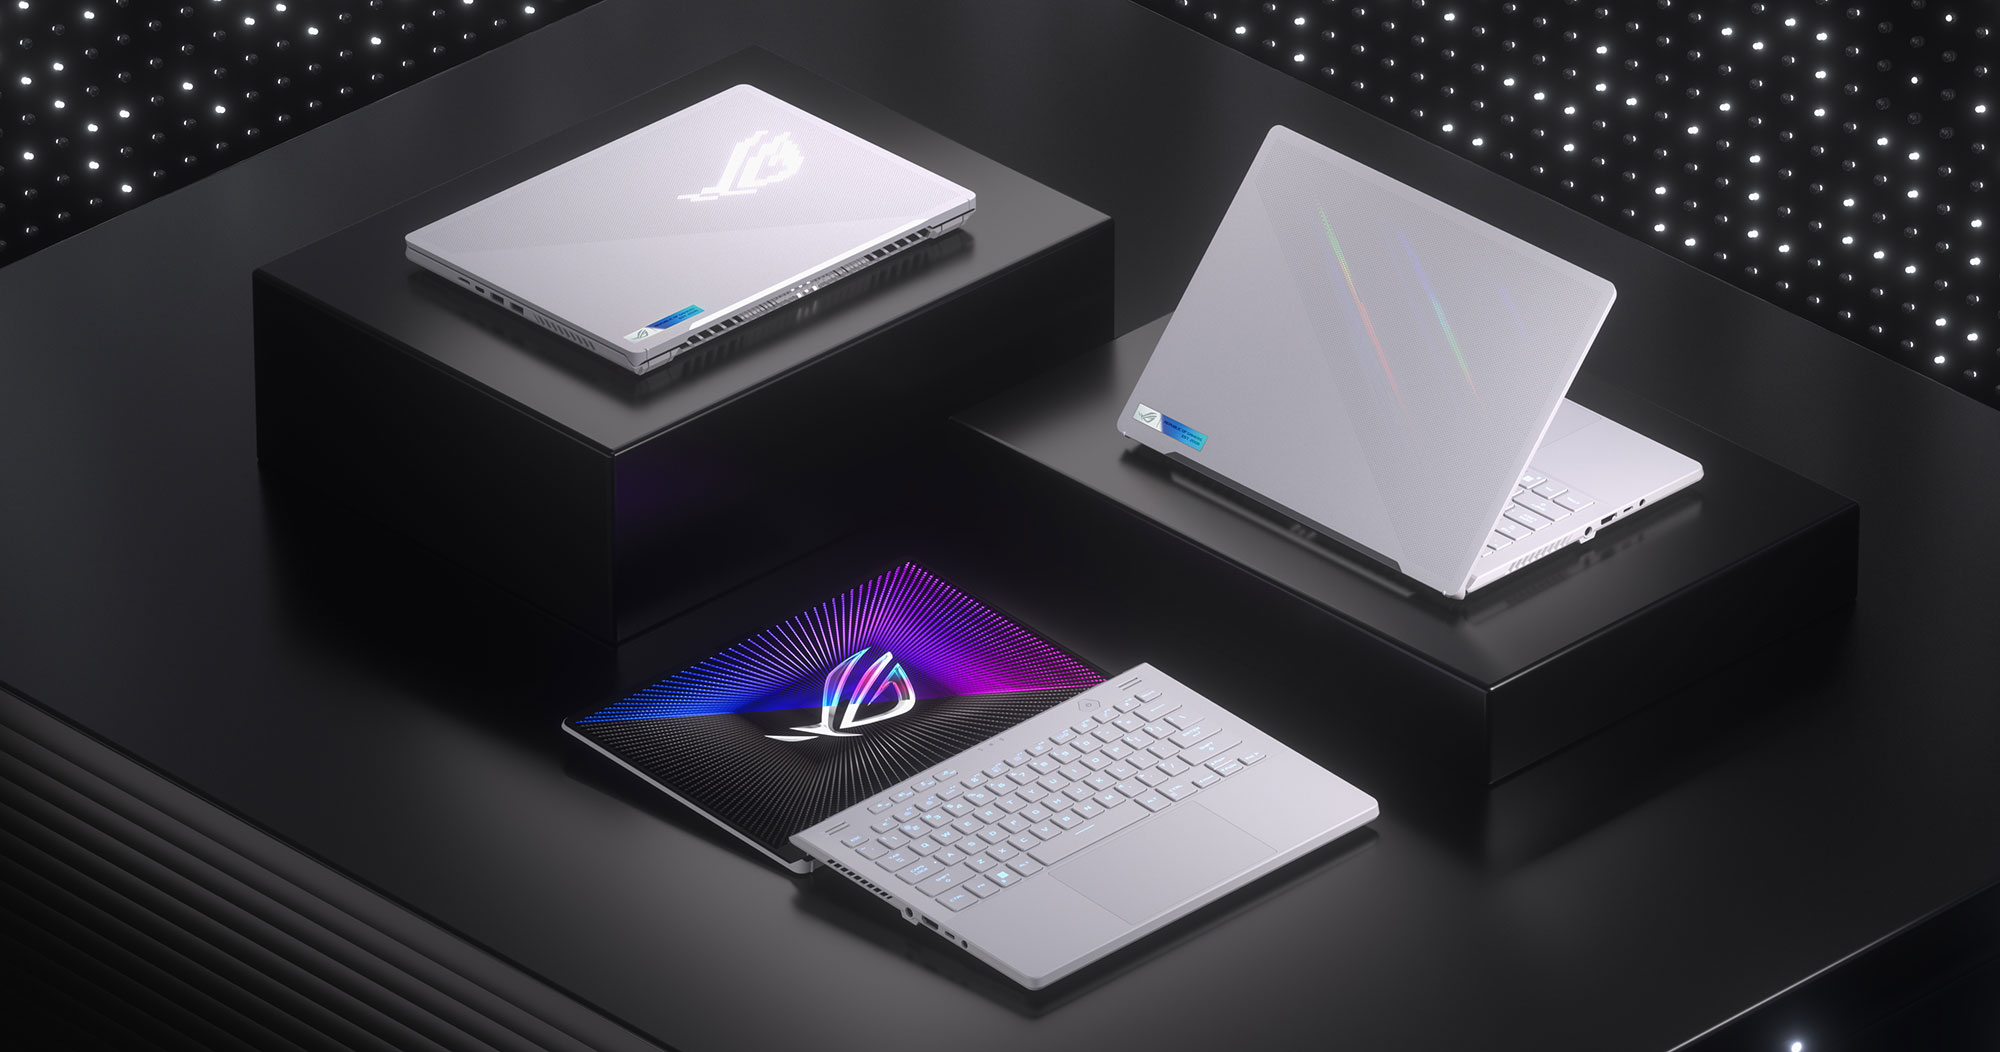 ASUS prezentuje notebooka ROG Zephyrus G14 nowej generacji z ekranem Nebula HDR, układami AMD Zen 4 i grafiką RTX 40